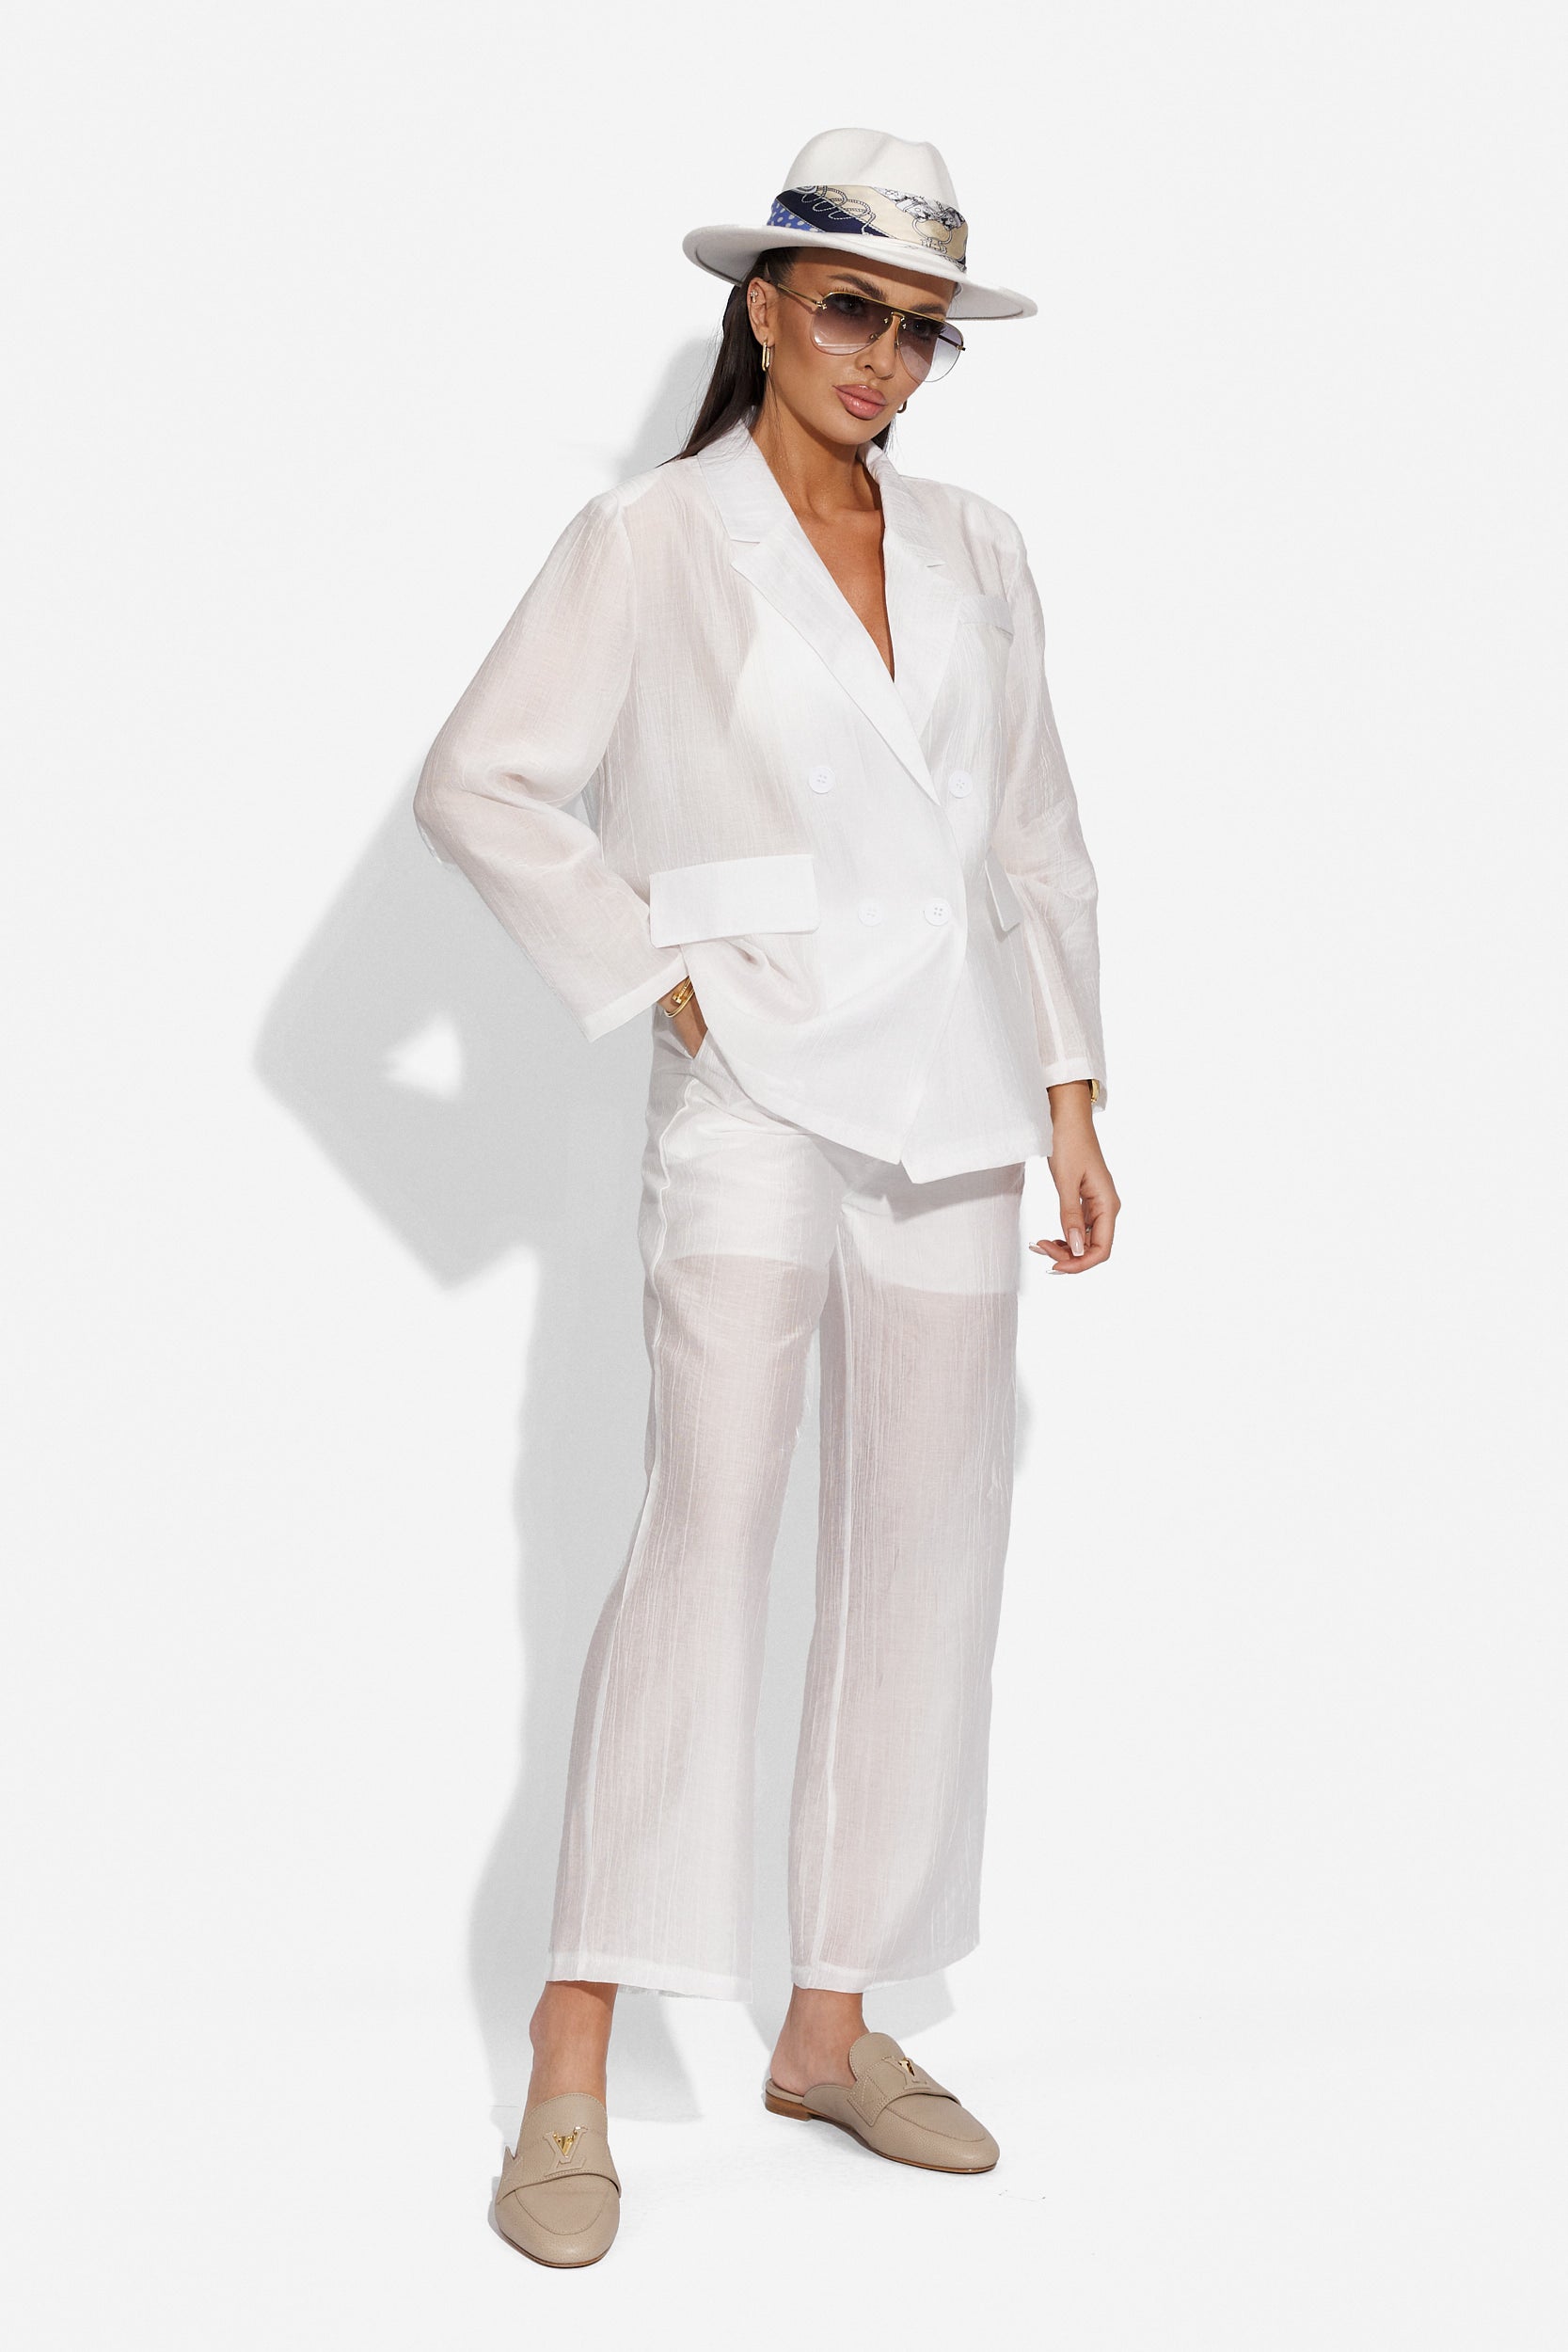 Ladies' elegant white pantsuit Salesa Bogas